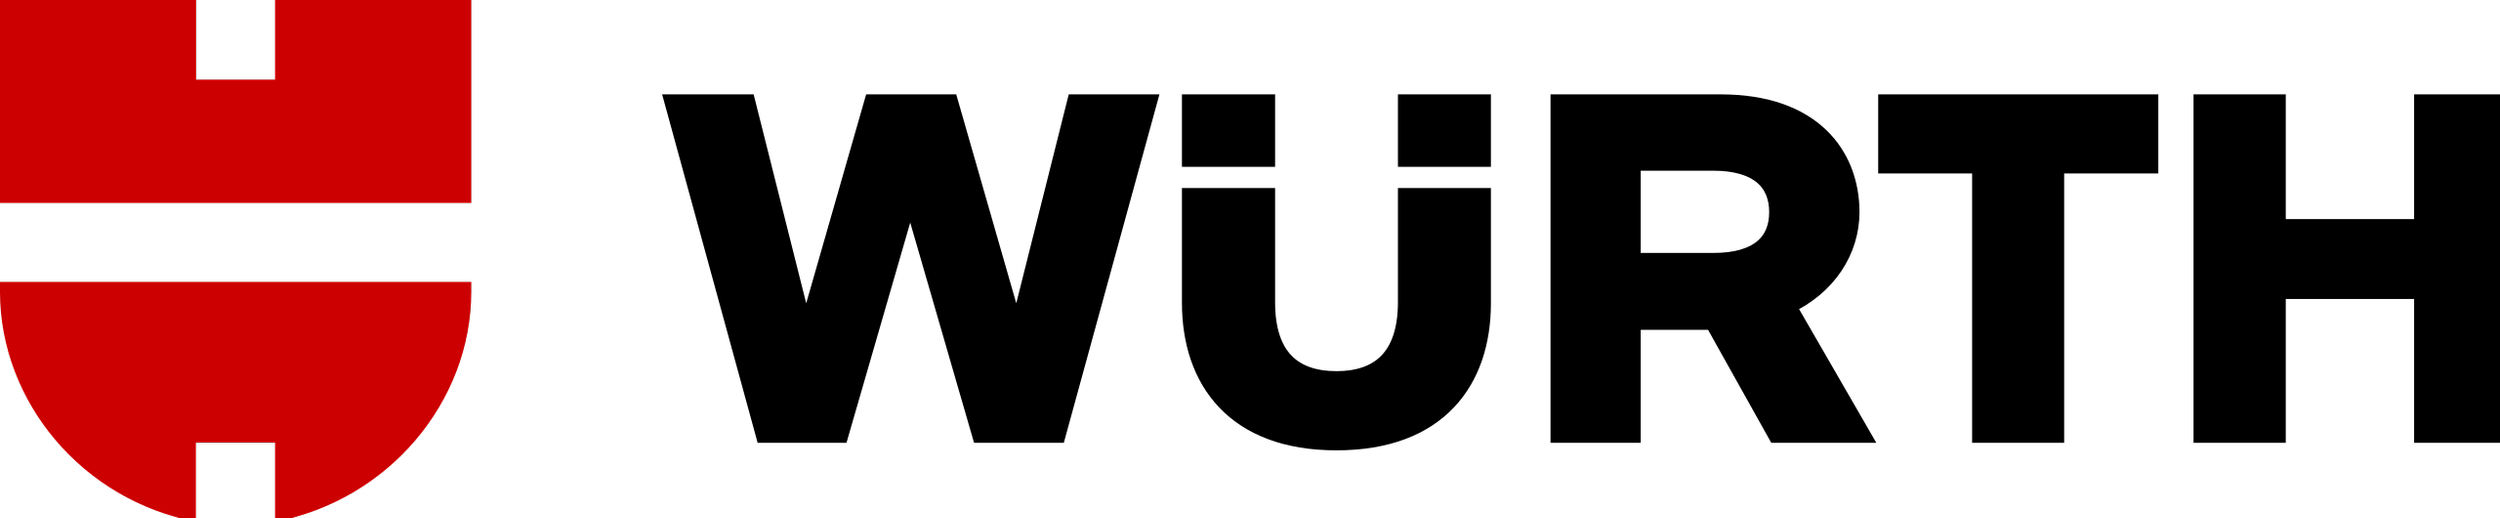 Würth_Logo_2010.svg.png